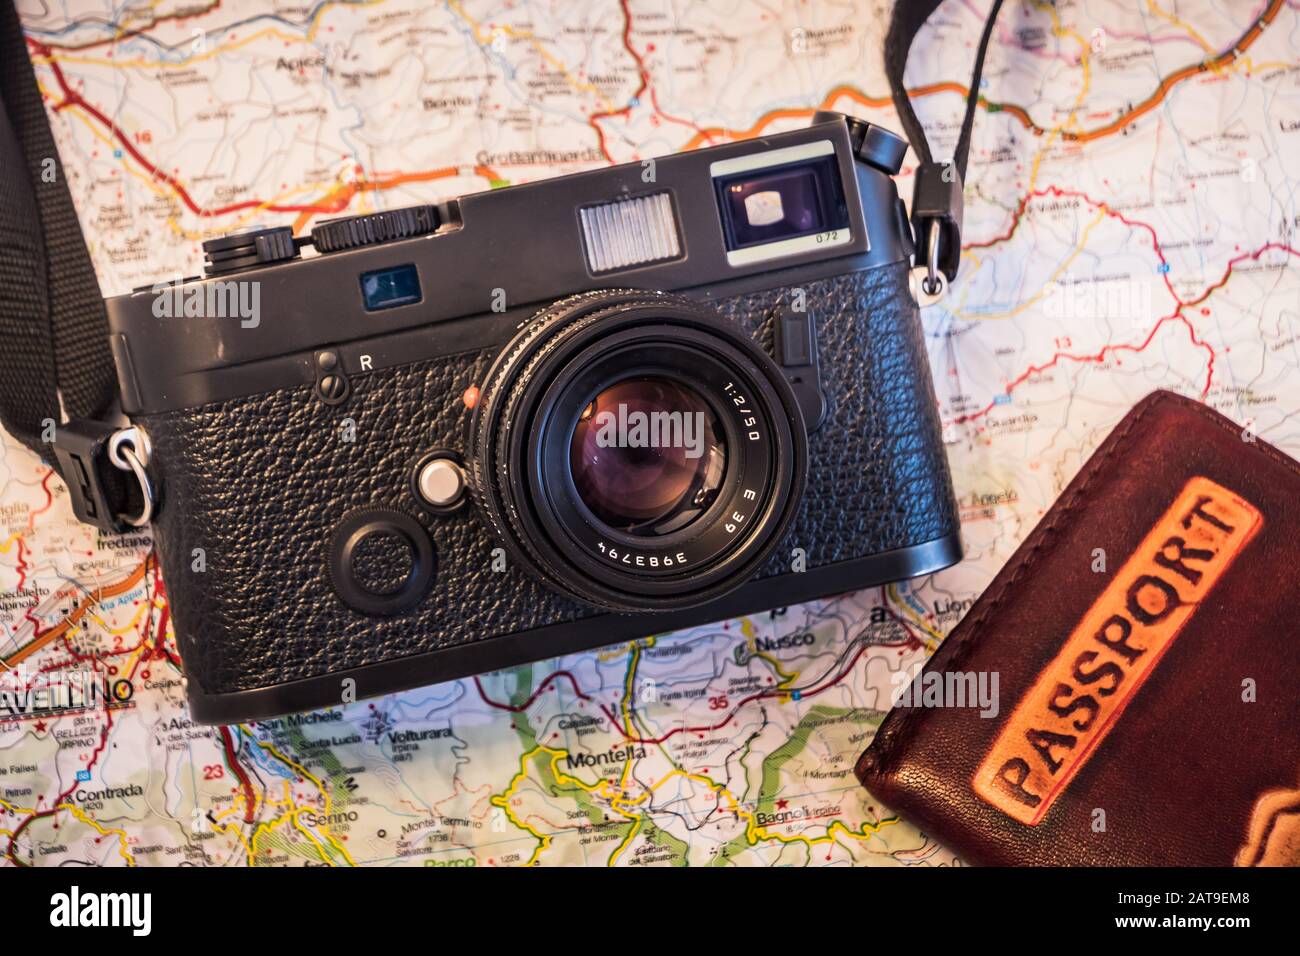 Reise Fotografie Konzept - Foto Kamera, Pass und Karte auf einem dunklen Hintergrund - Vintage Look Stockfoto